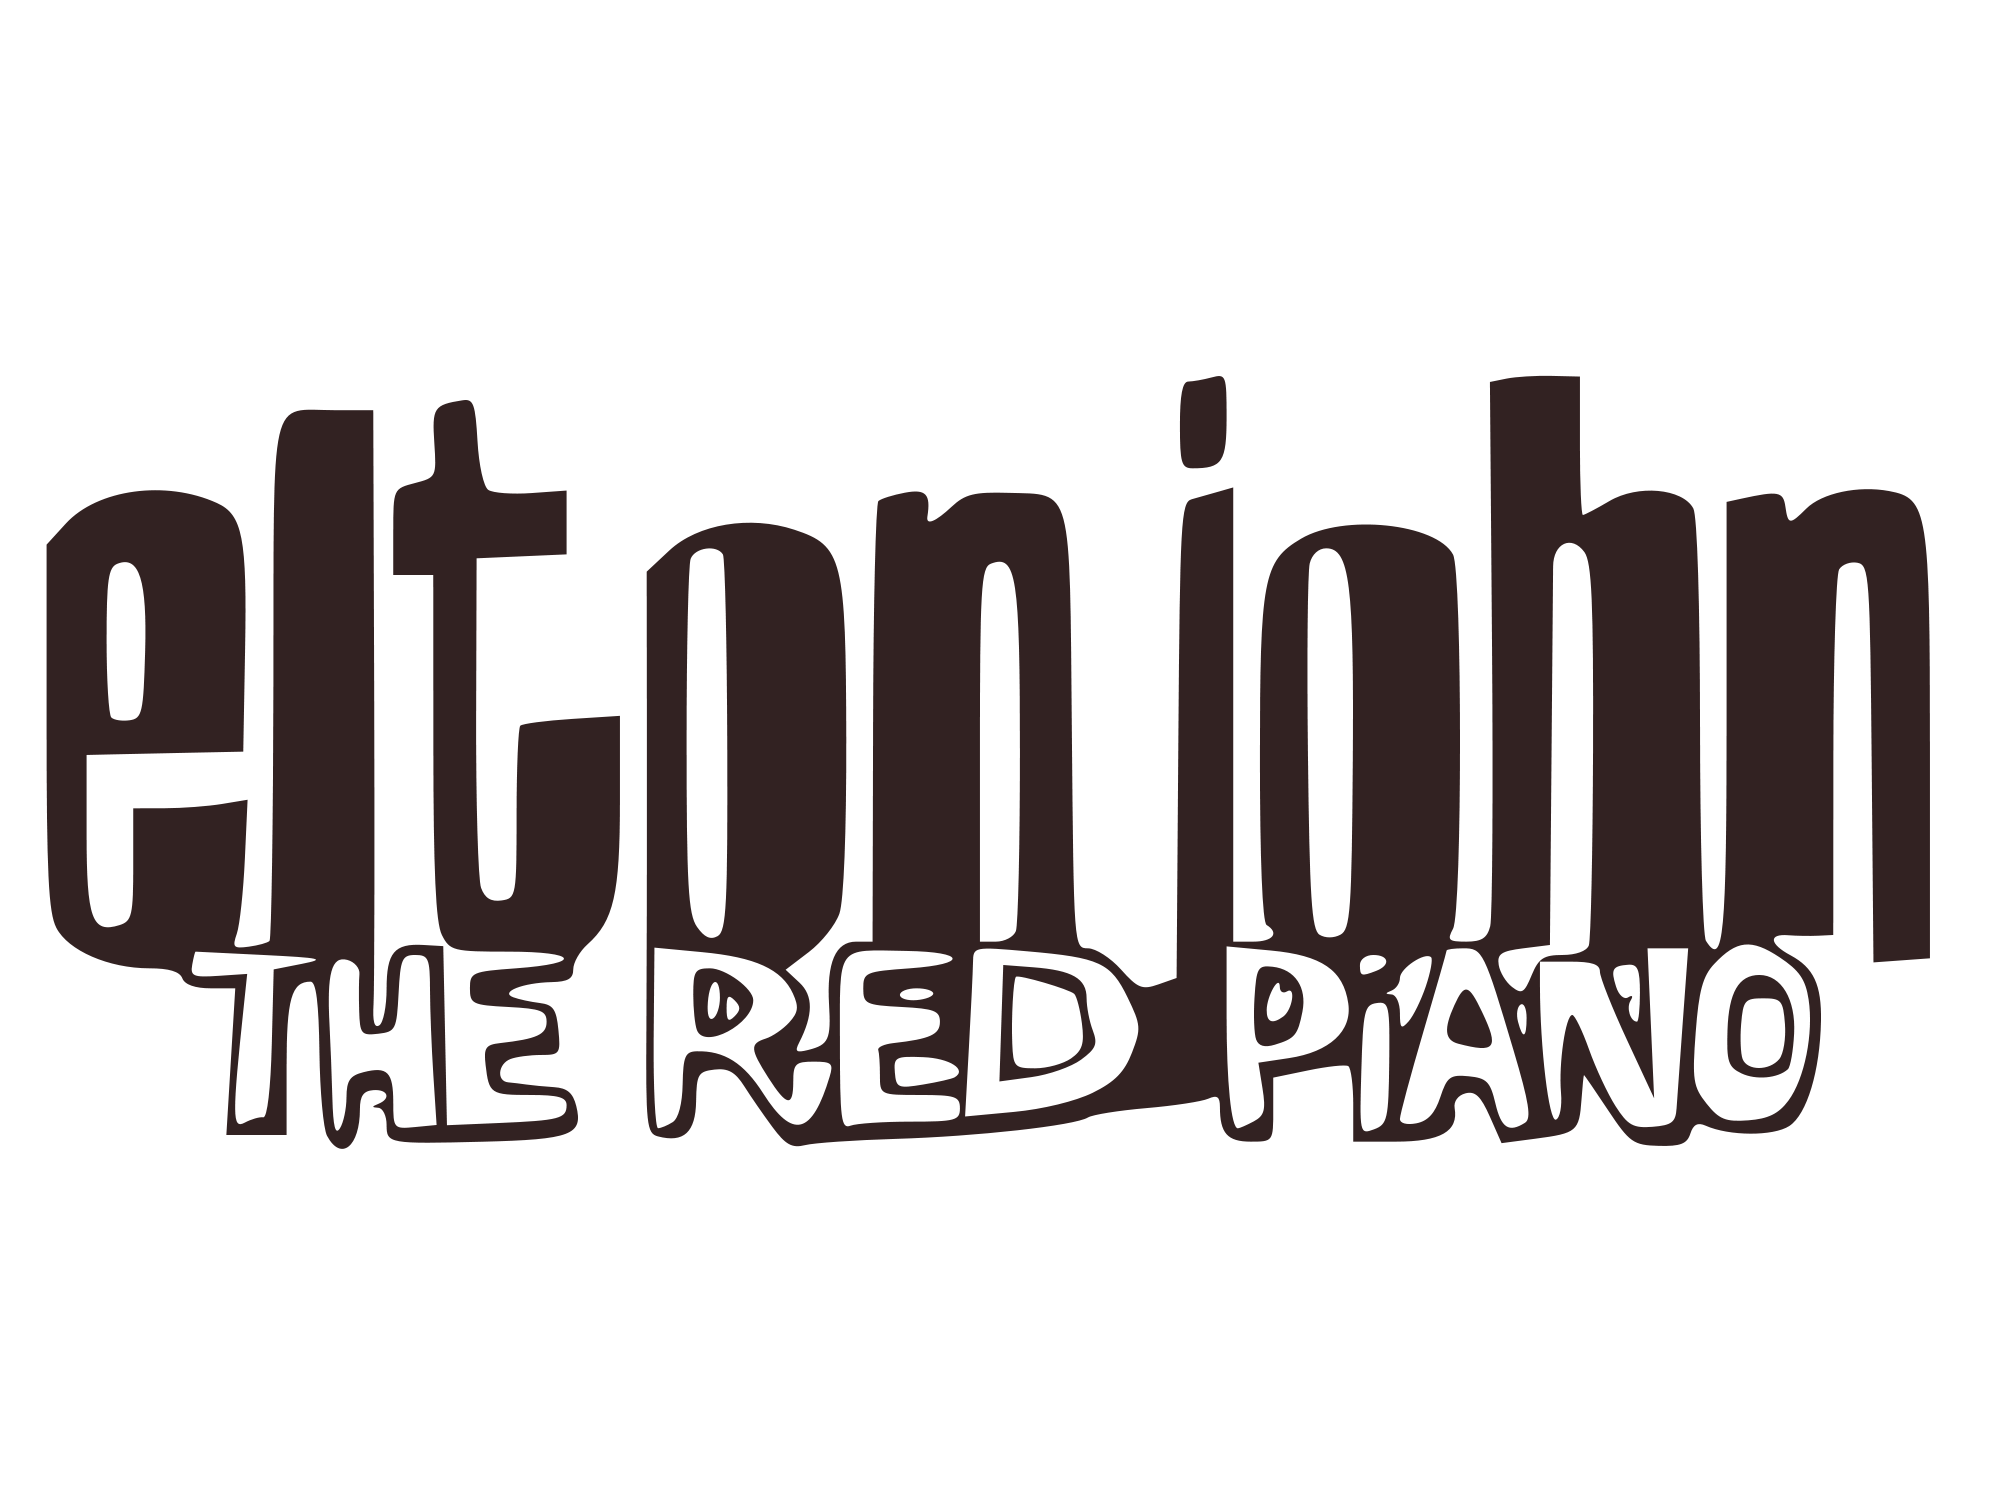 Elton John Logo - File:Elton John - The Red Piano.svg - Wikimedia Commons